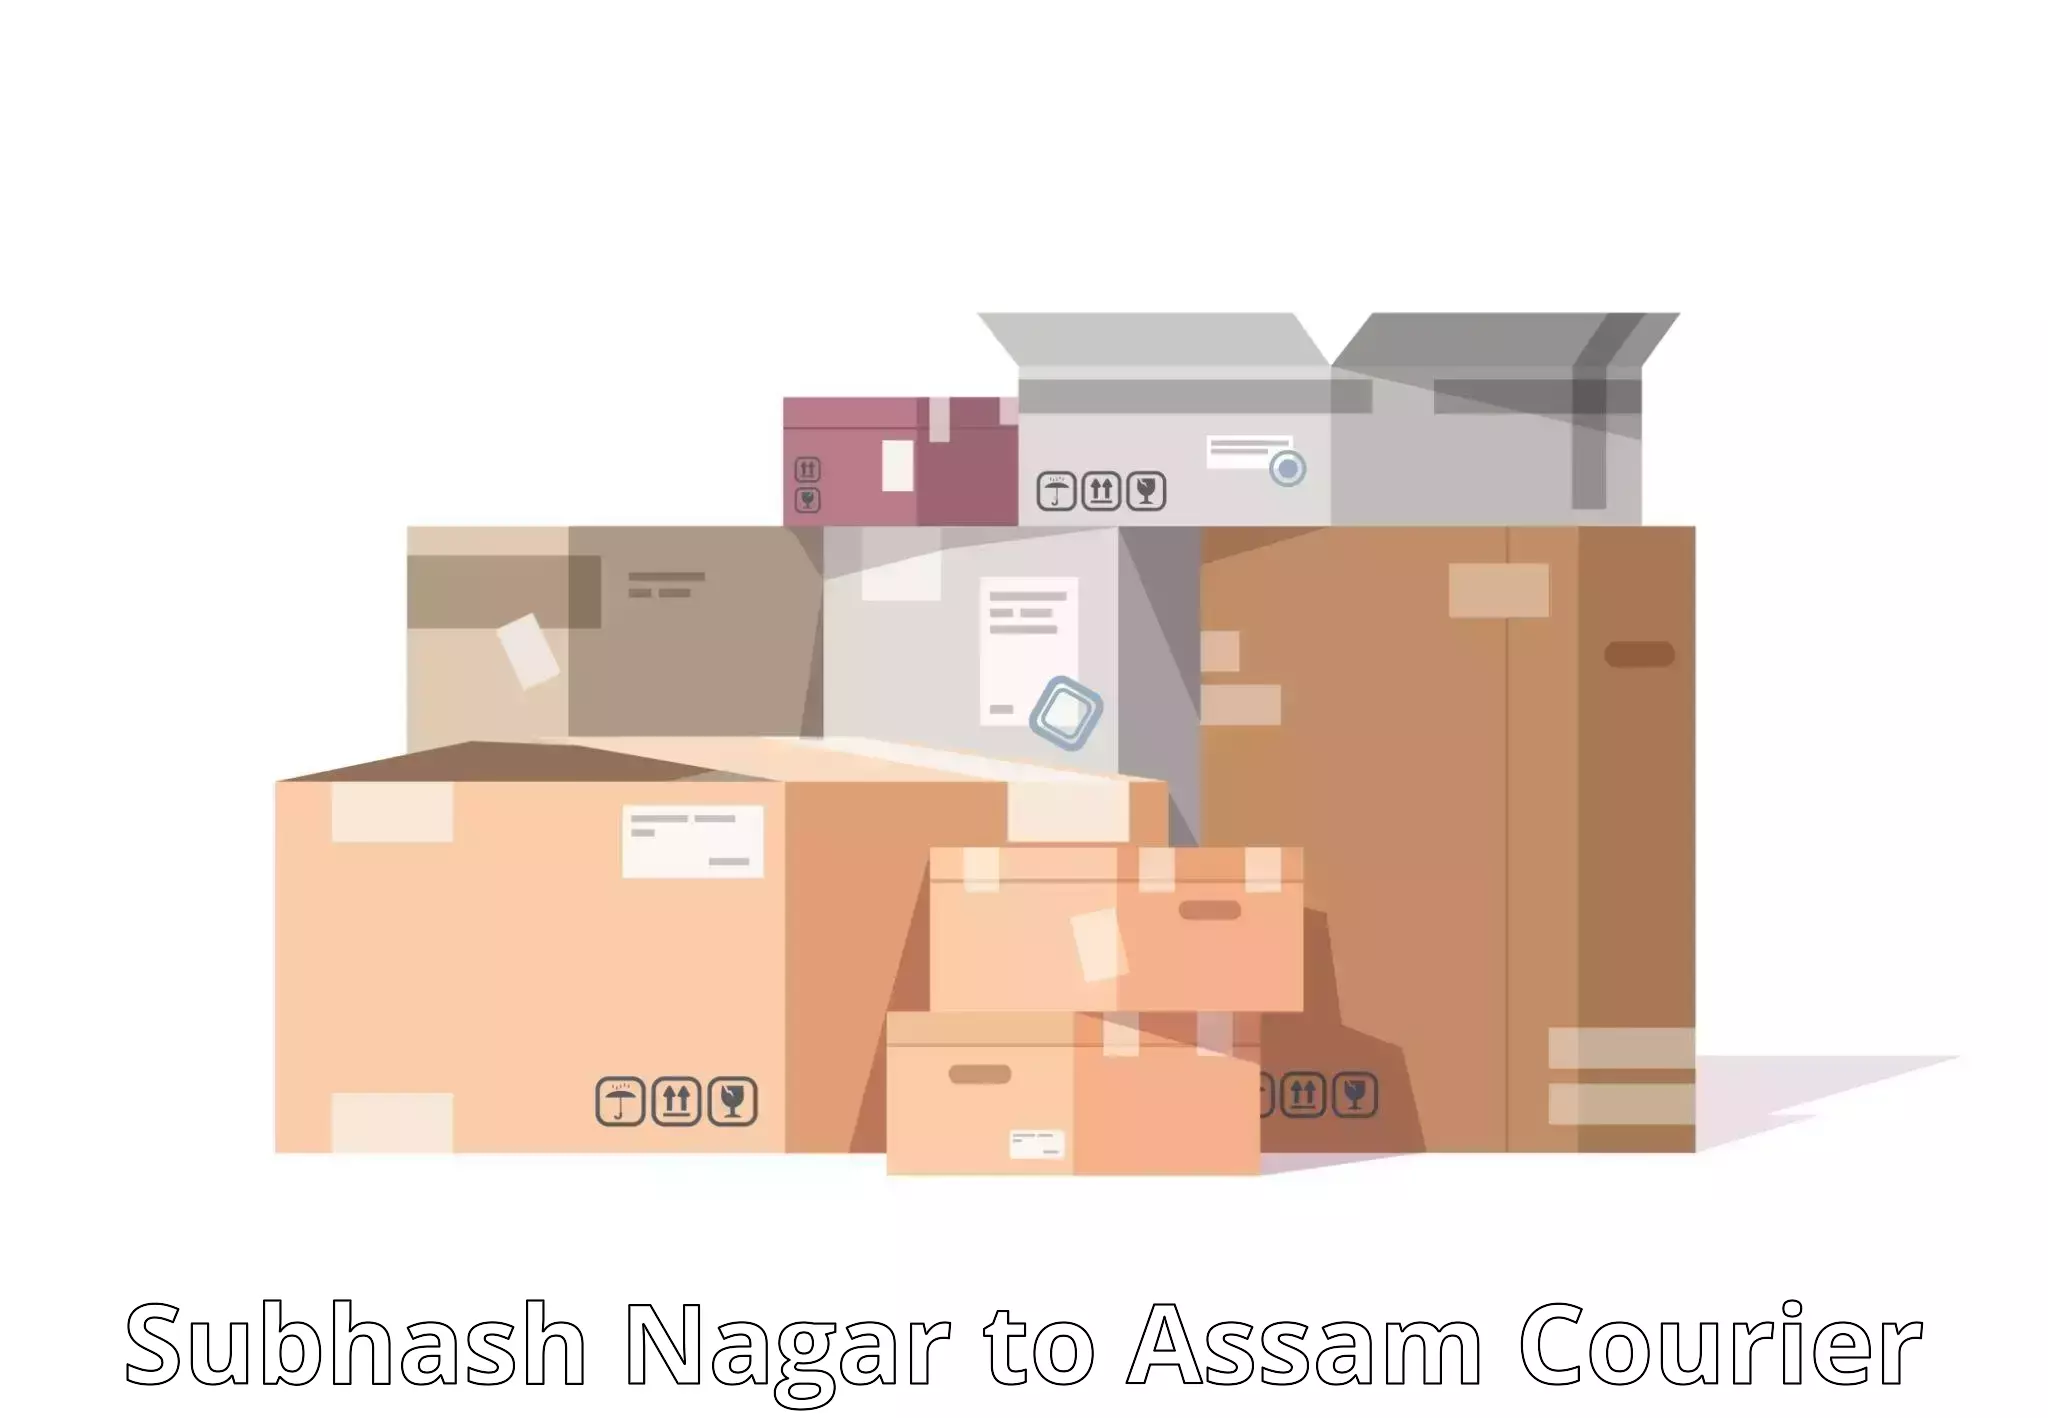 Large-scale shipping solutions Subhash Nagar to Amoni